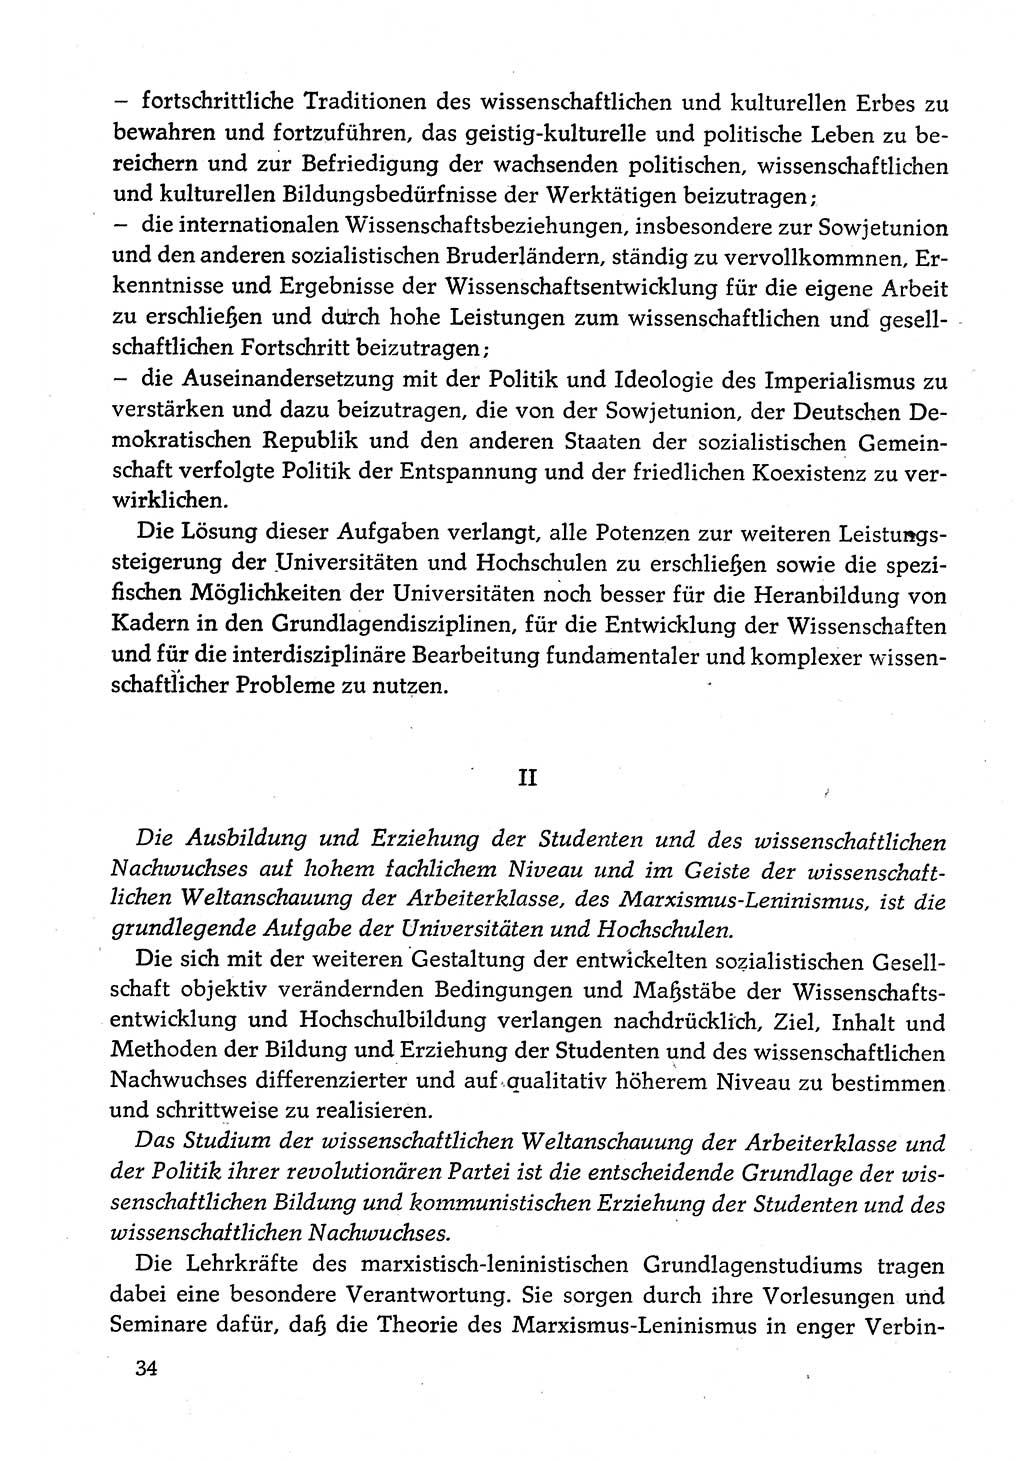 Dokumente der Sozialistischen Einheitspartei Deutschlands (SED) [Deutsche Demokratische Republik (DDR)] 1980-1981, Seite 34 (Dok. SED DDR 1980-1981, S. 34)